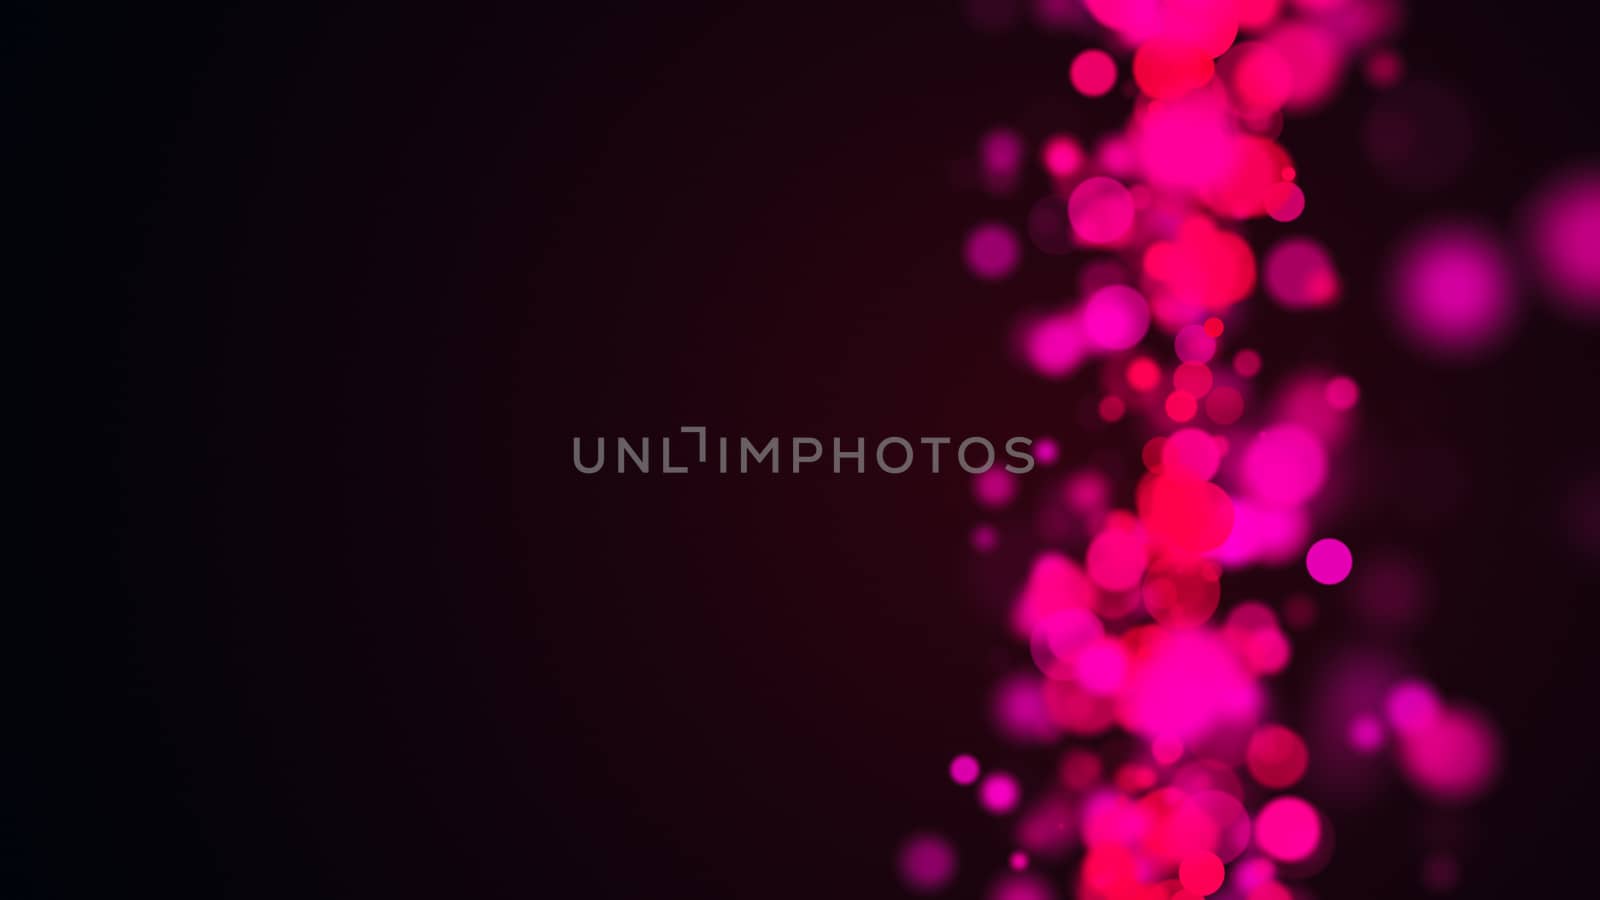 Abstract violet background. Digital illustration. 3d rendering